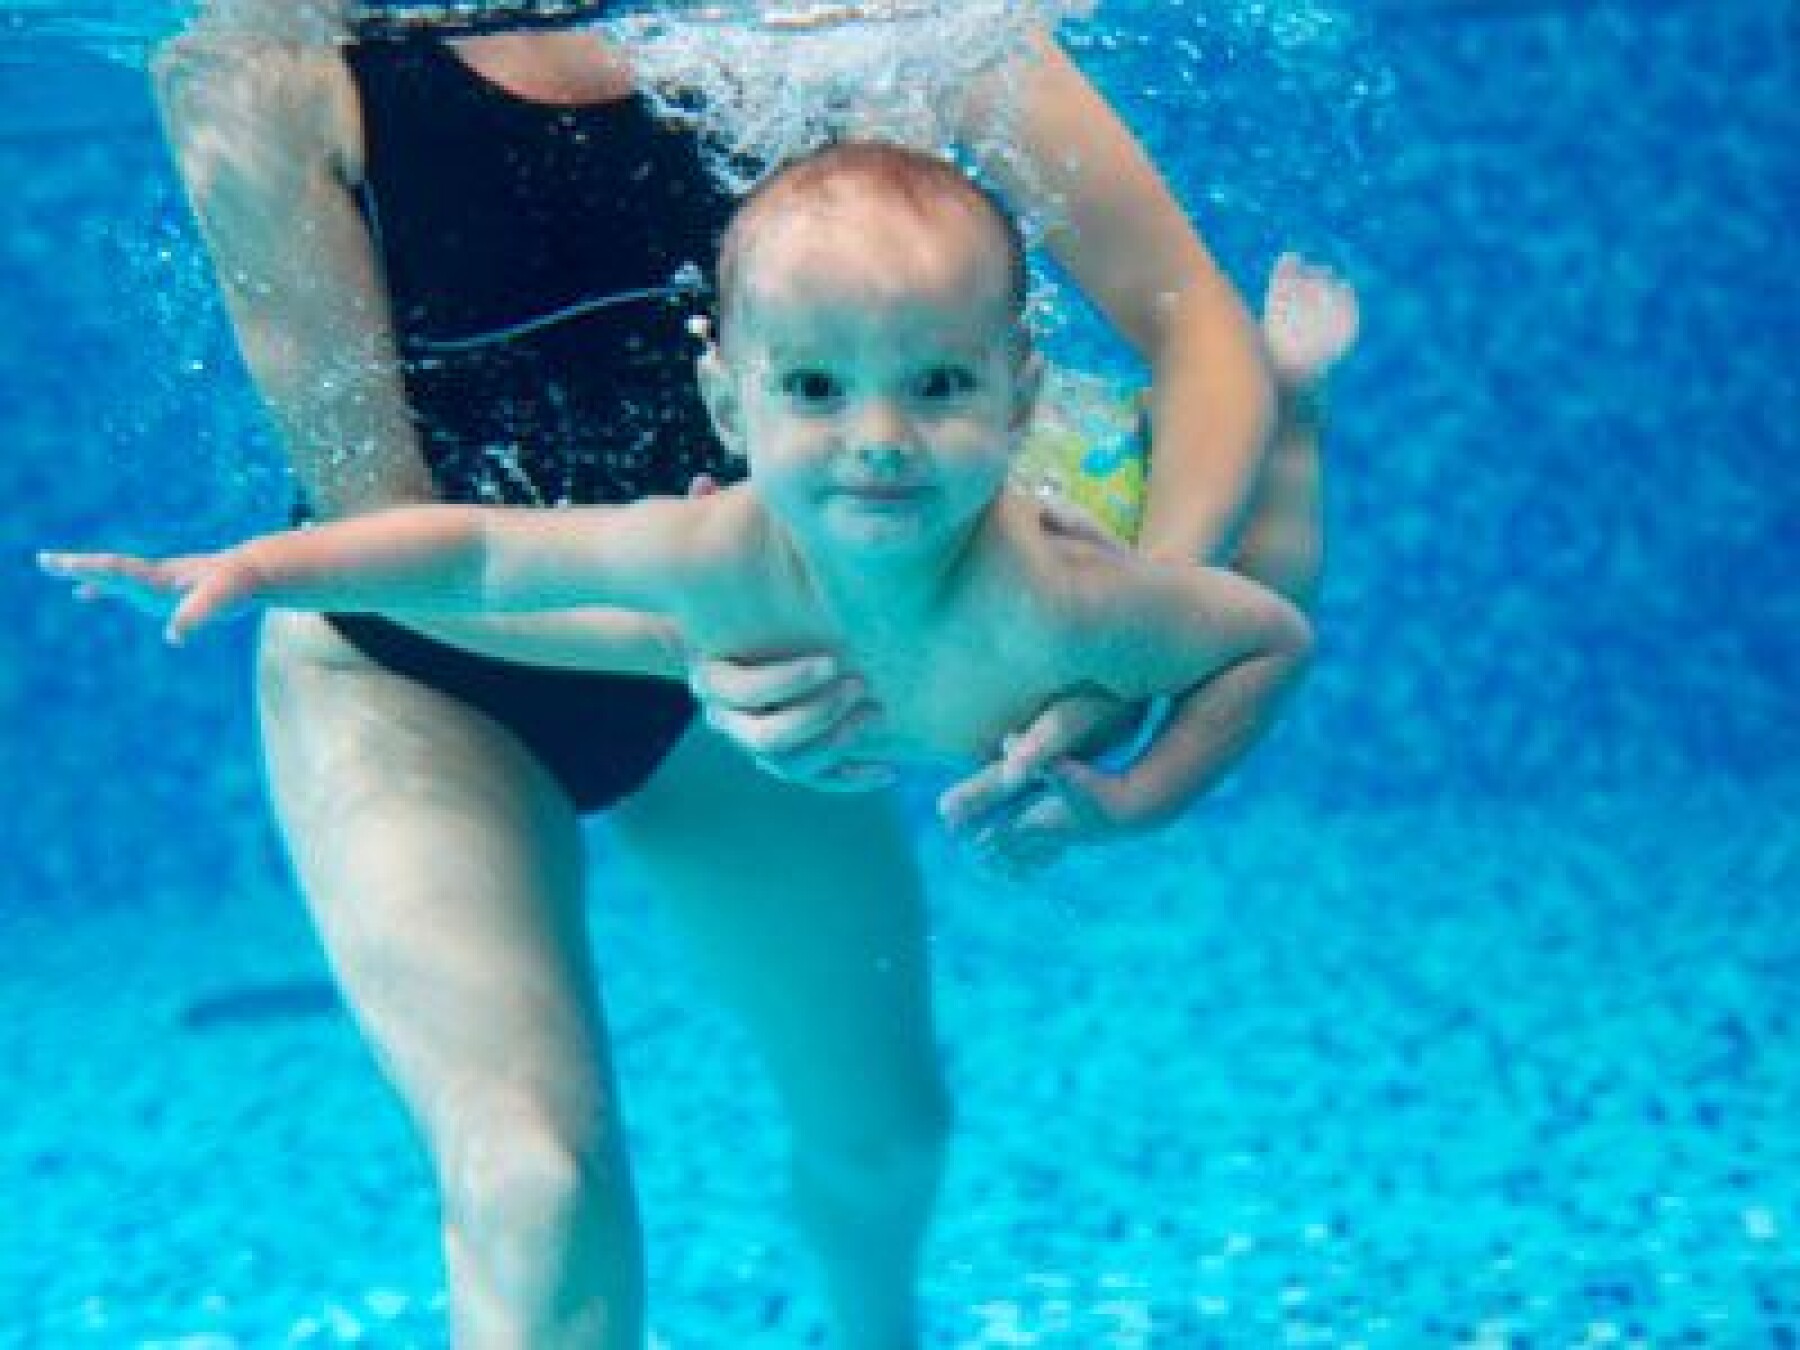 Bébés nageurs : comment rassurer les parents ?